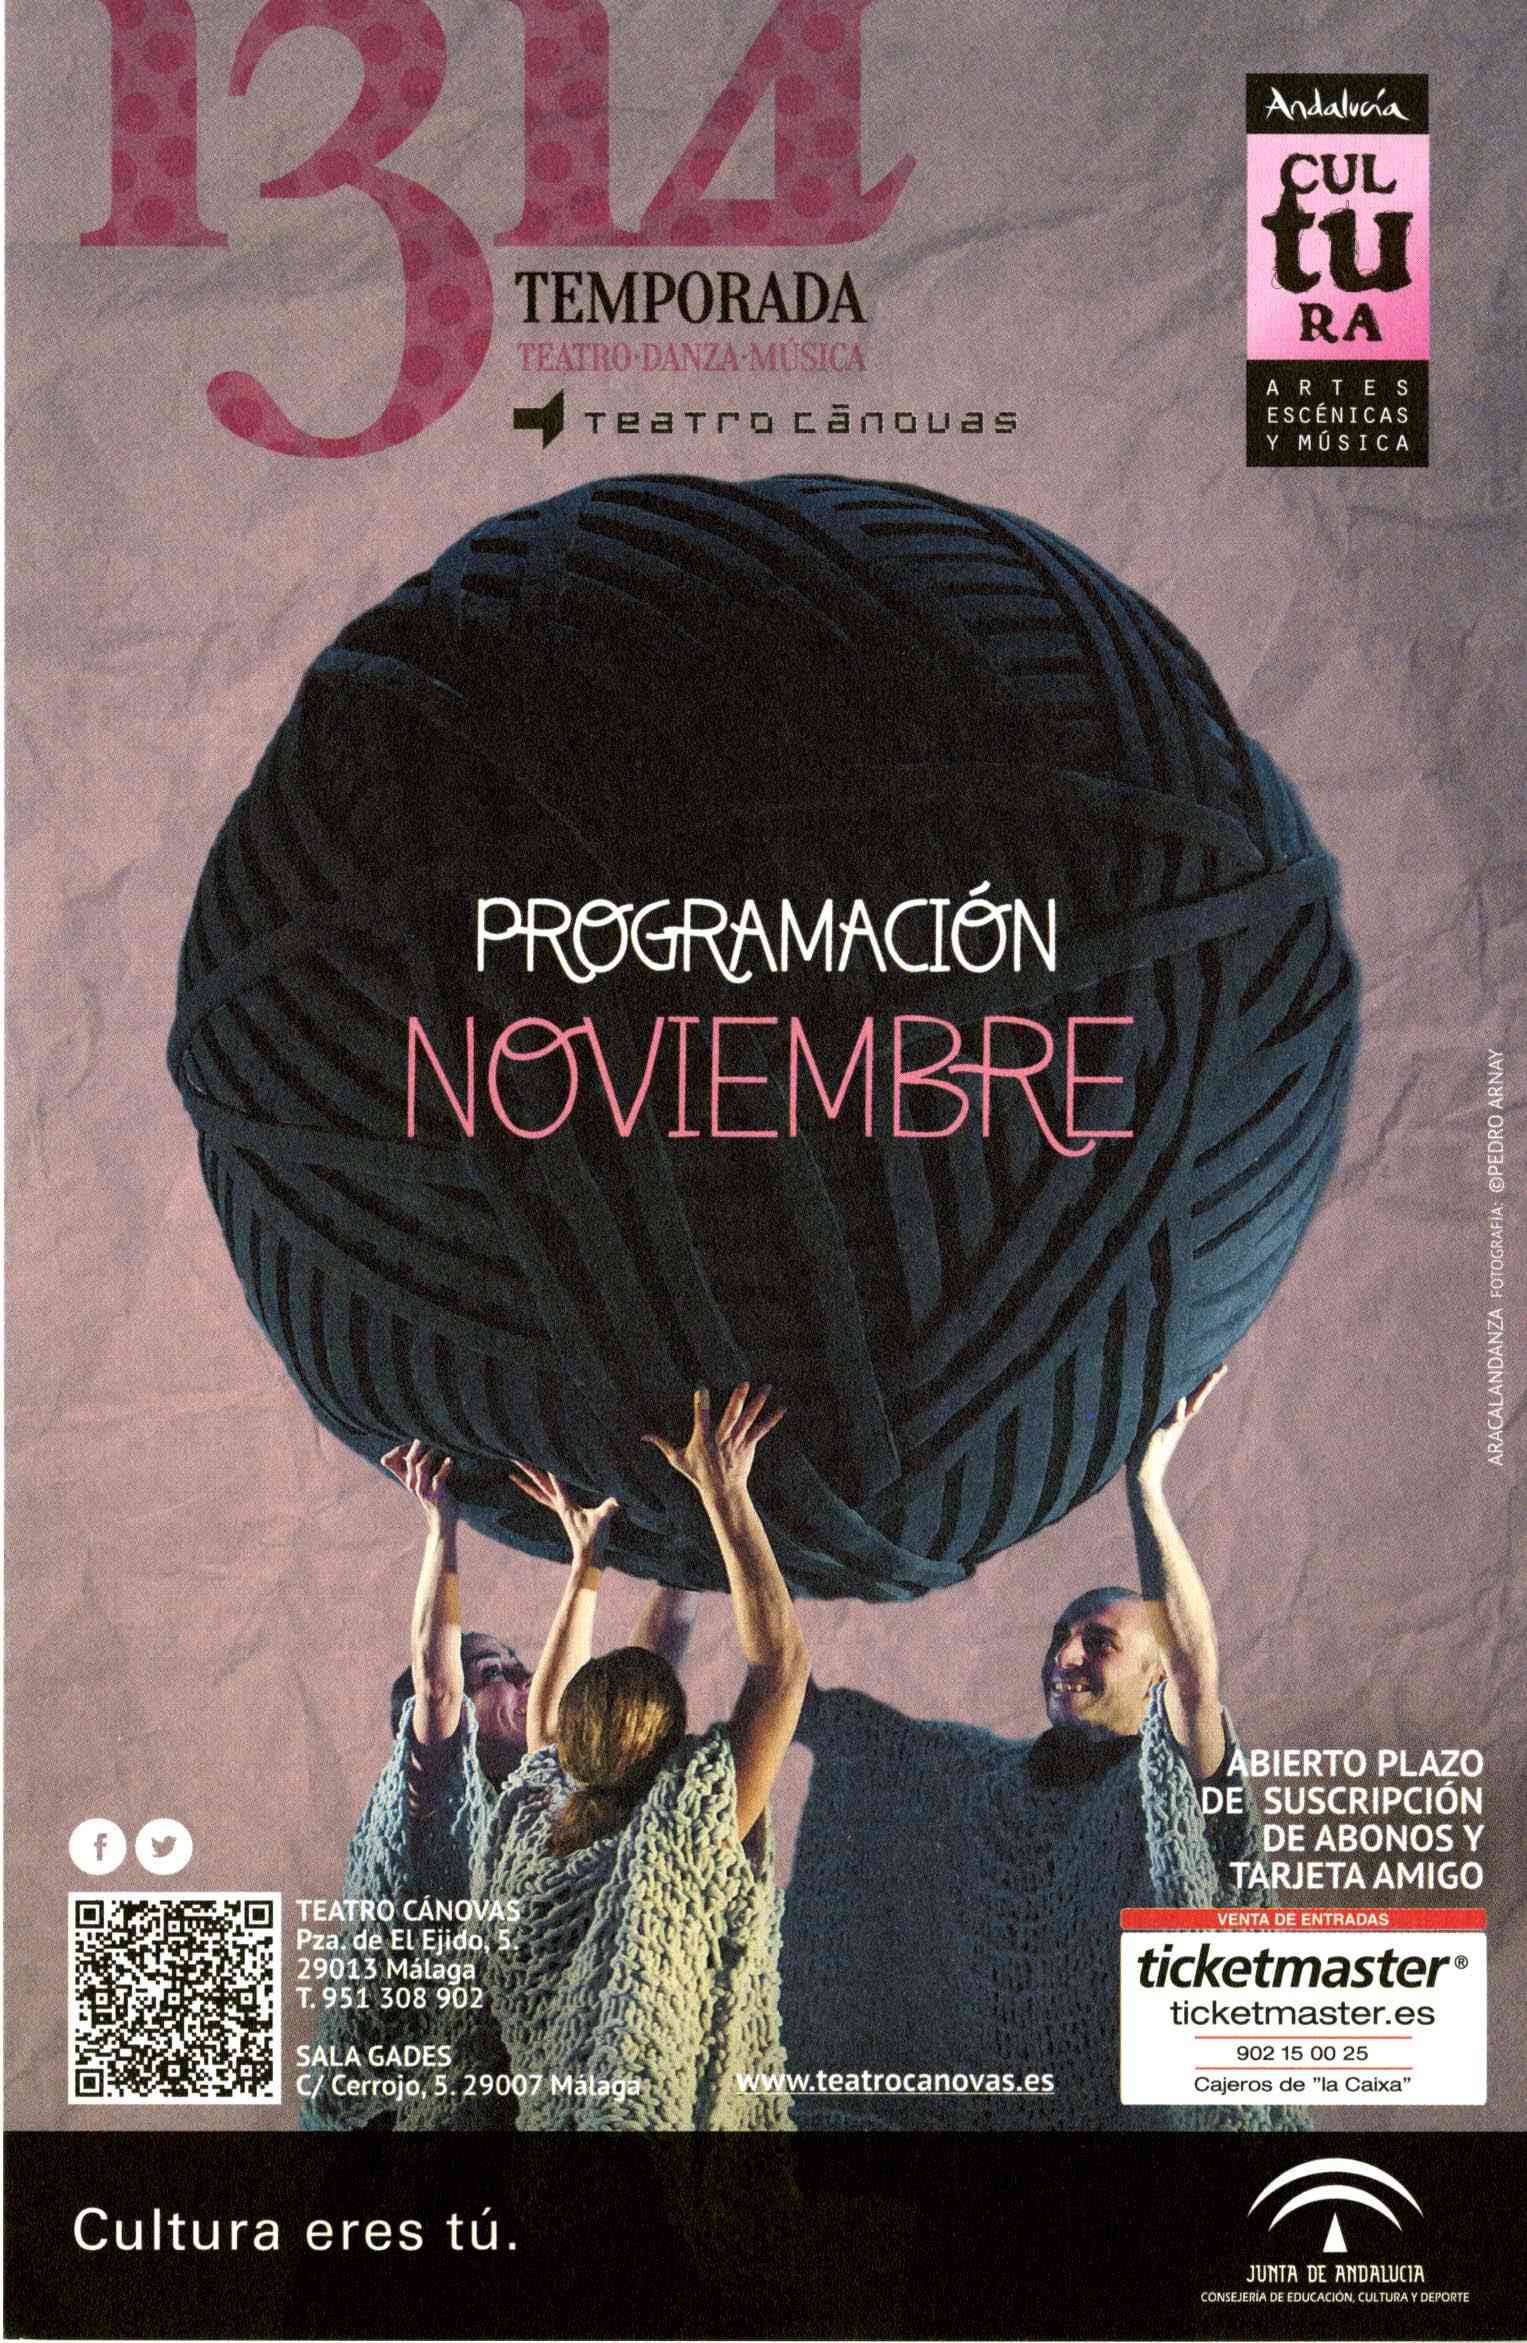 Teatro Cánovas. Programación noviembre 2013